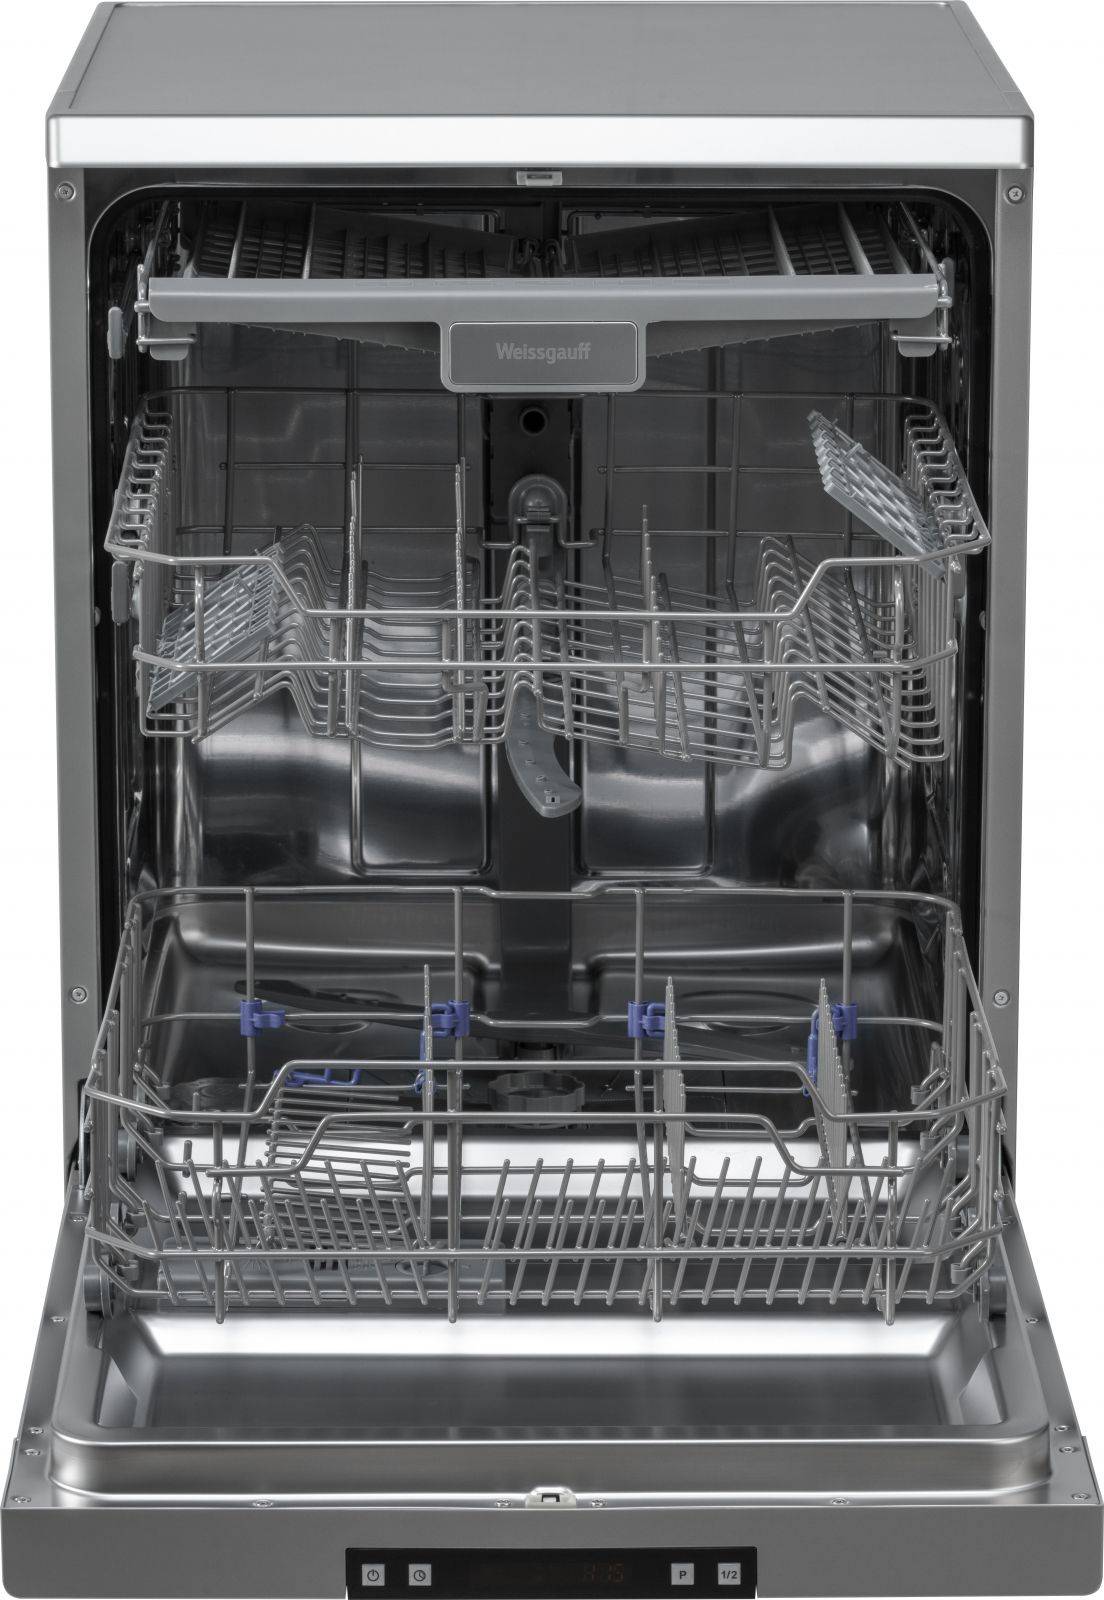 Посудомоечная машина Weissgauff DW 6015 серебристый (419440)